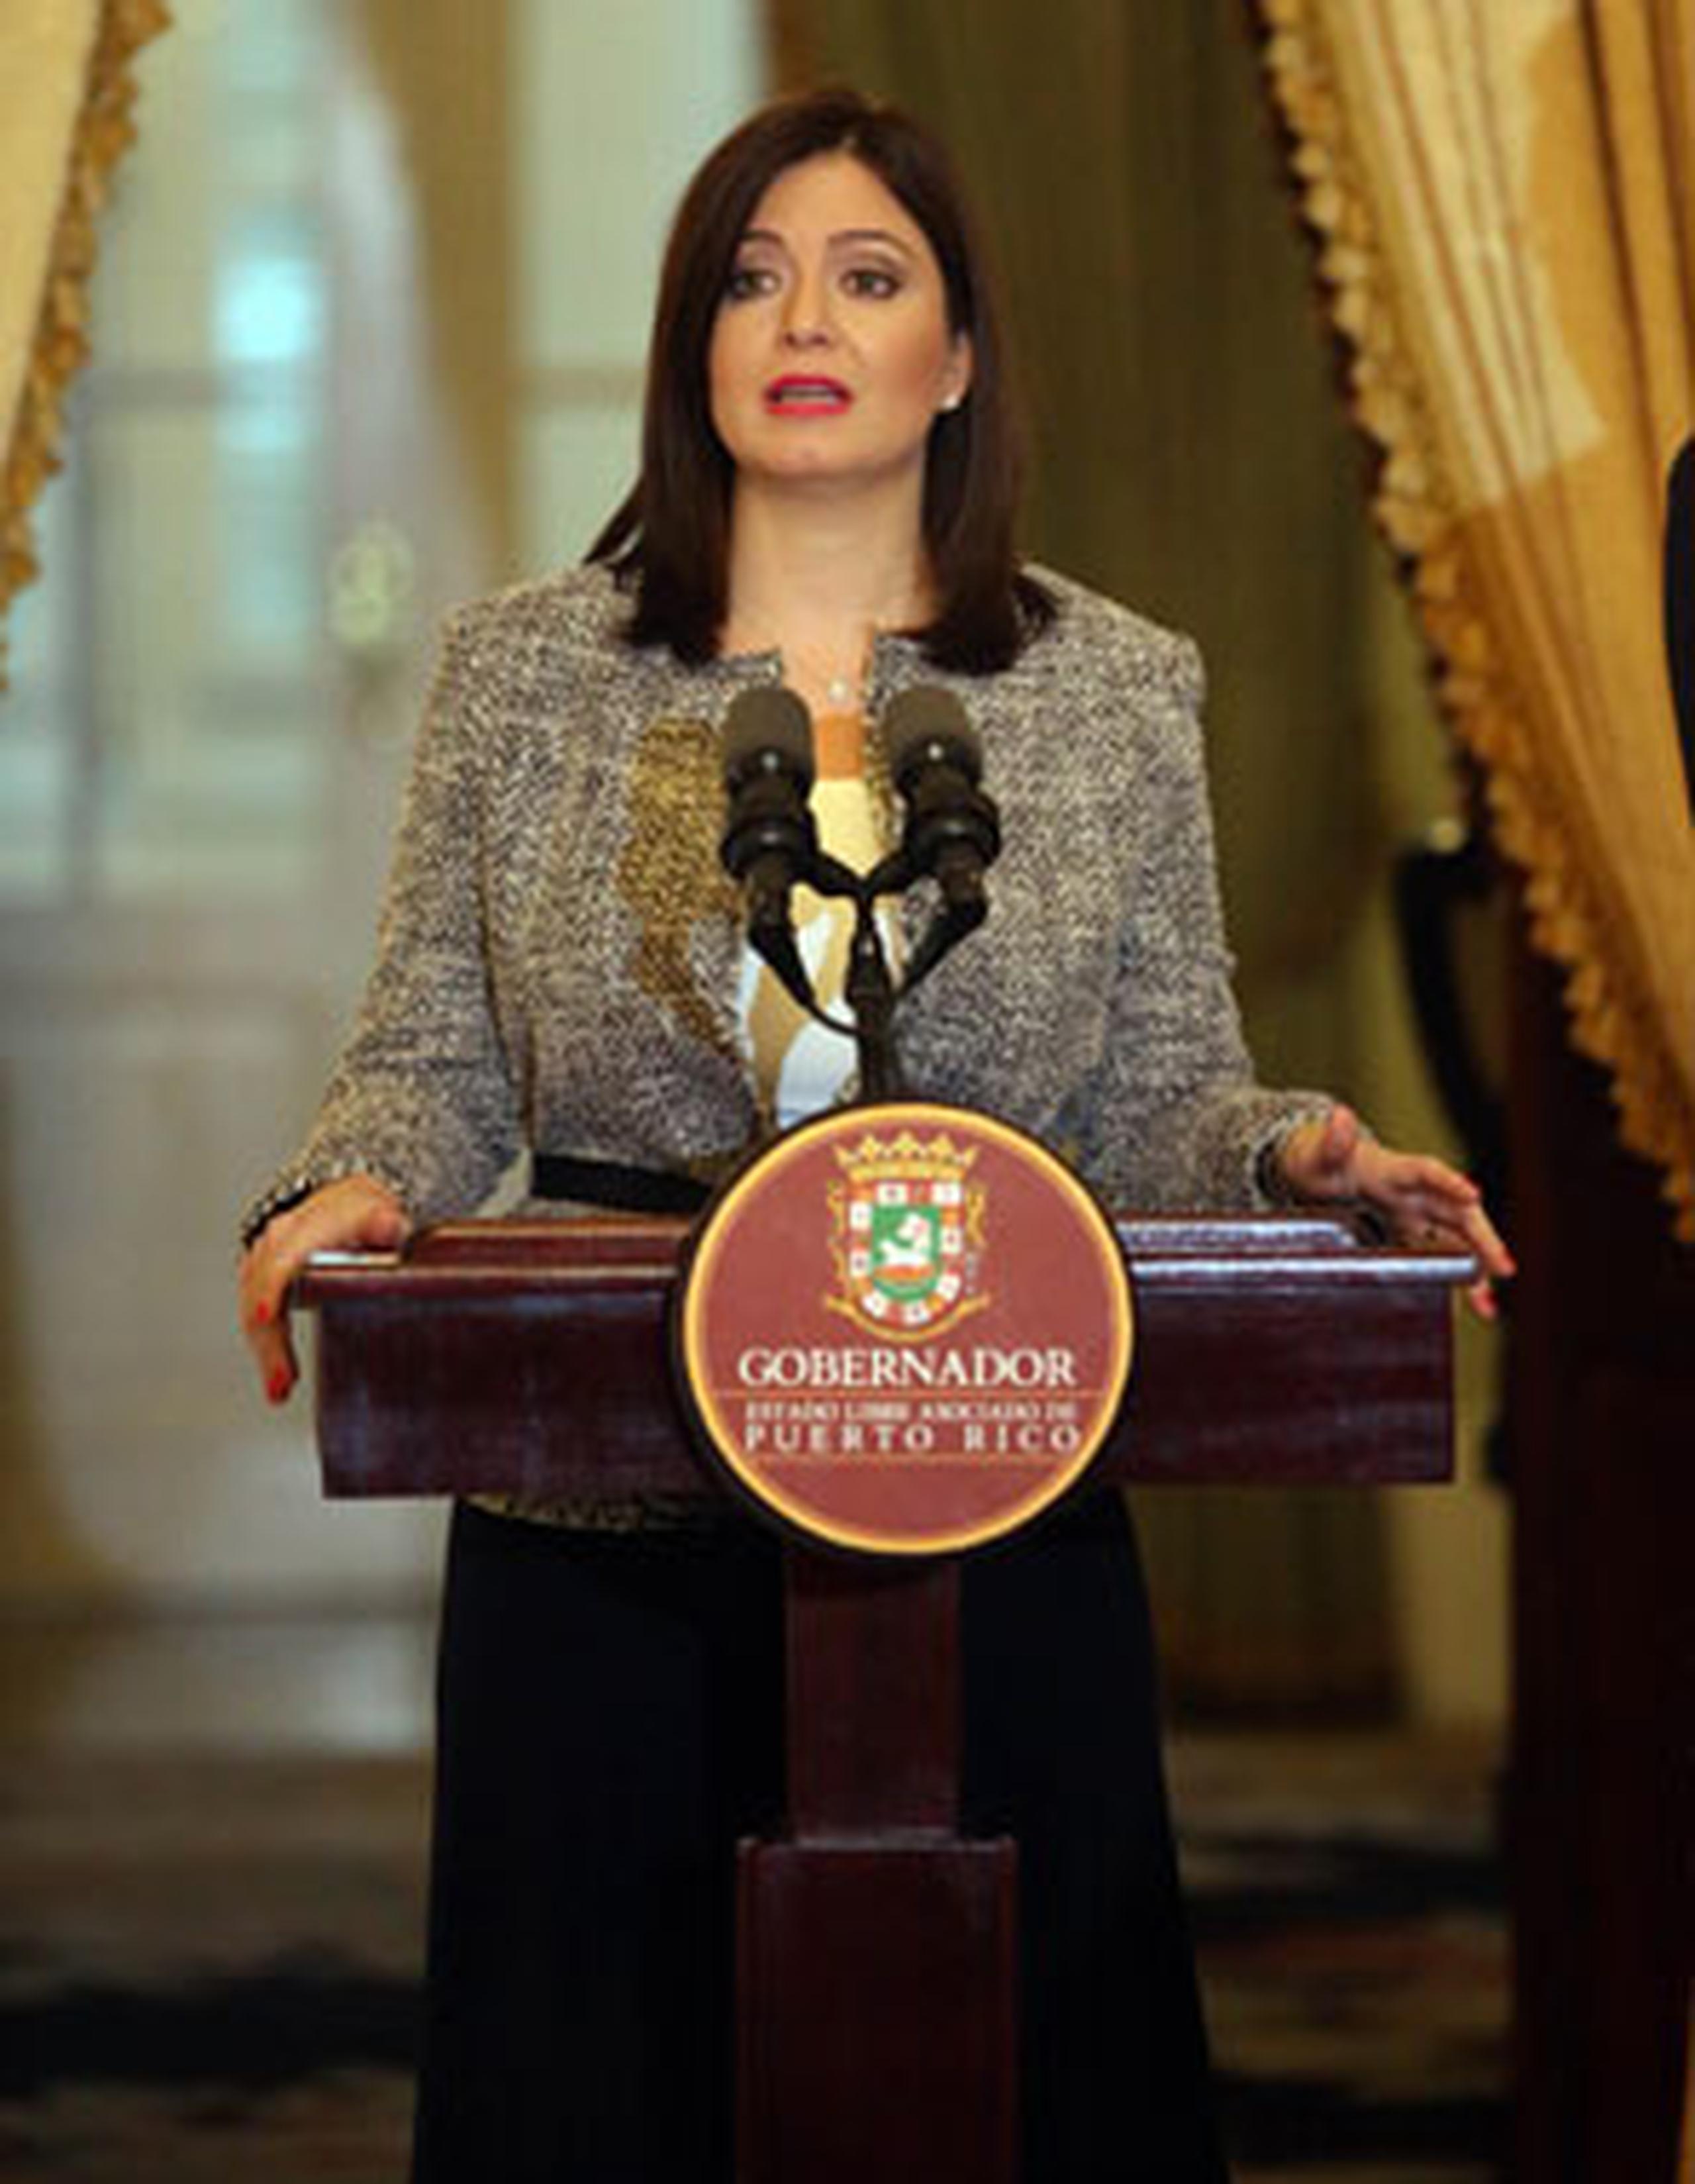 El 4 de junio de 2014, Oronoz Rodríguez fue nombrada como jueza asociada del Tribunal Supremo. (david.villafane@gfrmedia.com)